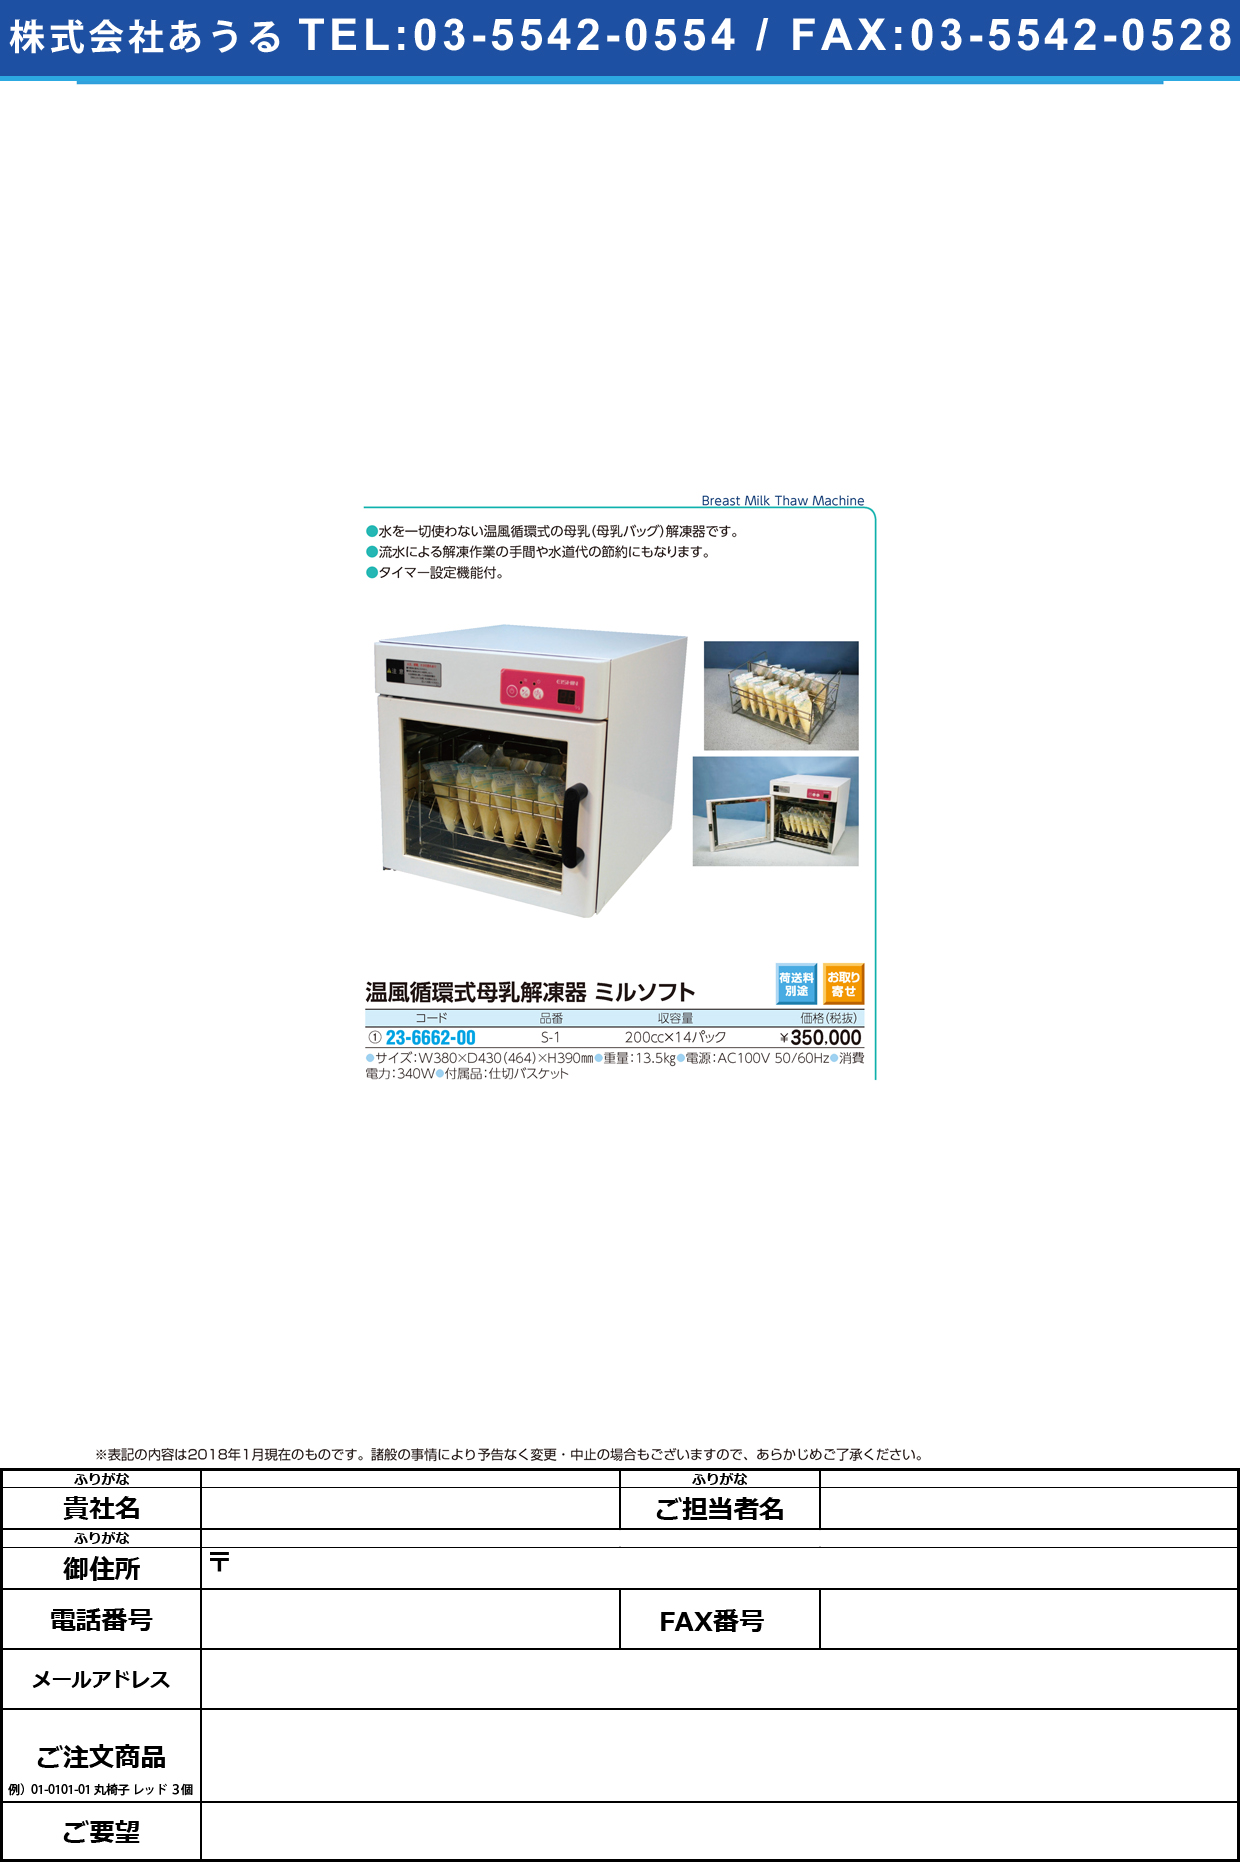 (23-6662-00)温風循環式母乳解凍器ミルソフト S-1 ﾎﾞﾆｭｳｶｲﾄｳｷﾐﾙｿﾌﾄ【1台単位】【2019年カタログ商品】